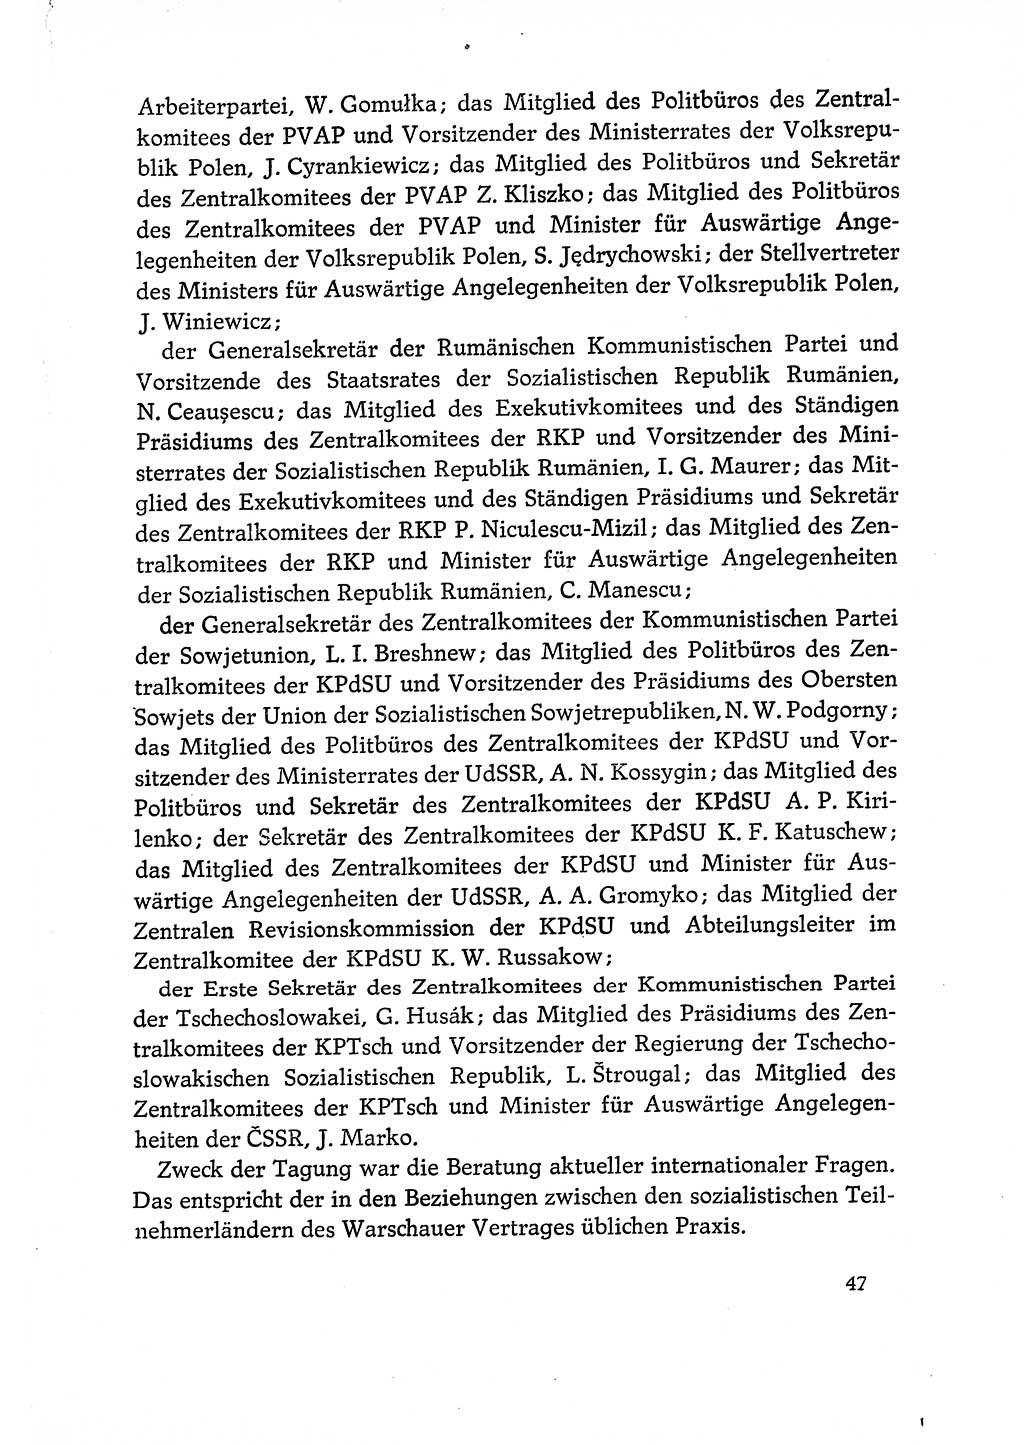 Dokumente der Sozialistischen Einheitspartei Deutschlands (SED) [Deutsche Demokratische Republik (DDR)] 1970-1971, Seite 47 (Dok. SED DDR 1970-1971, S. 47)